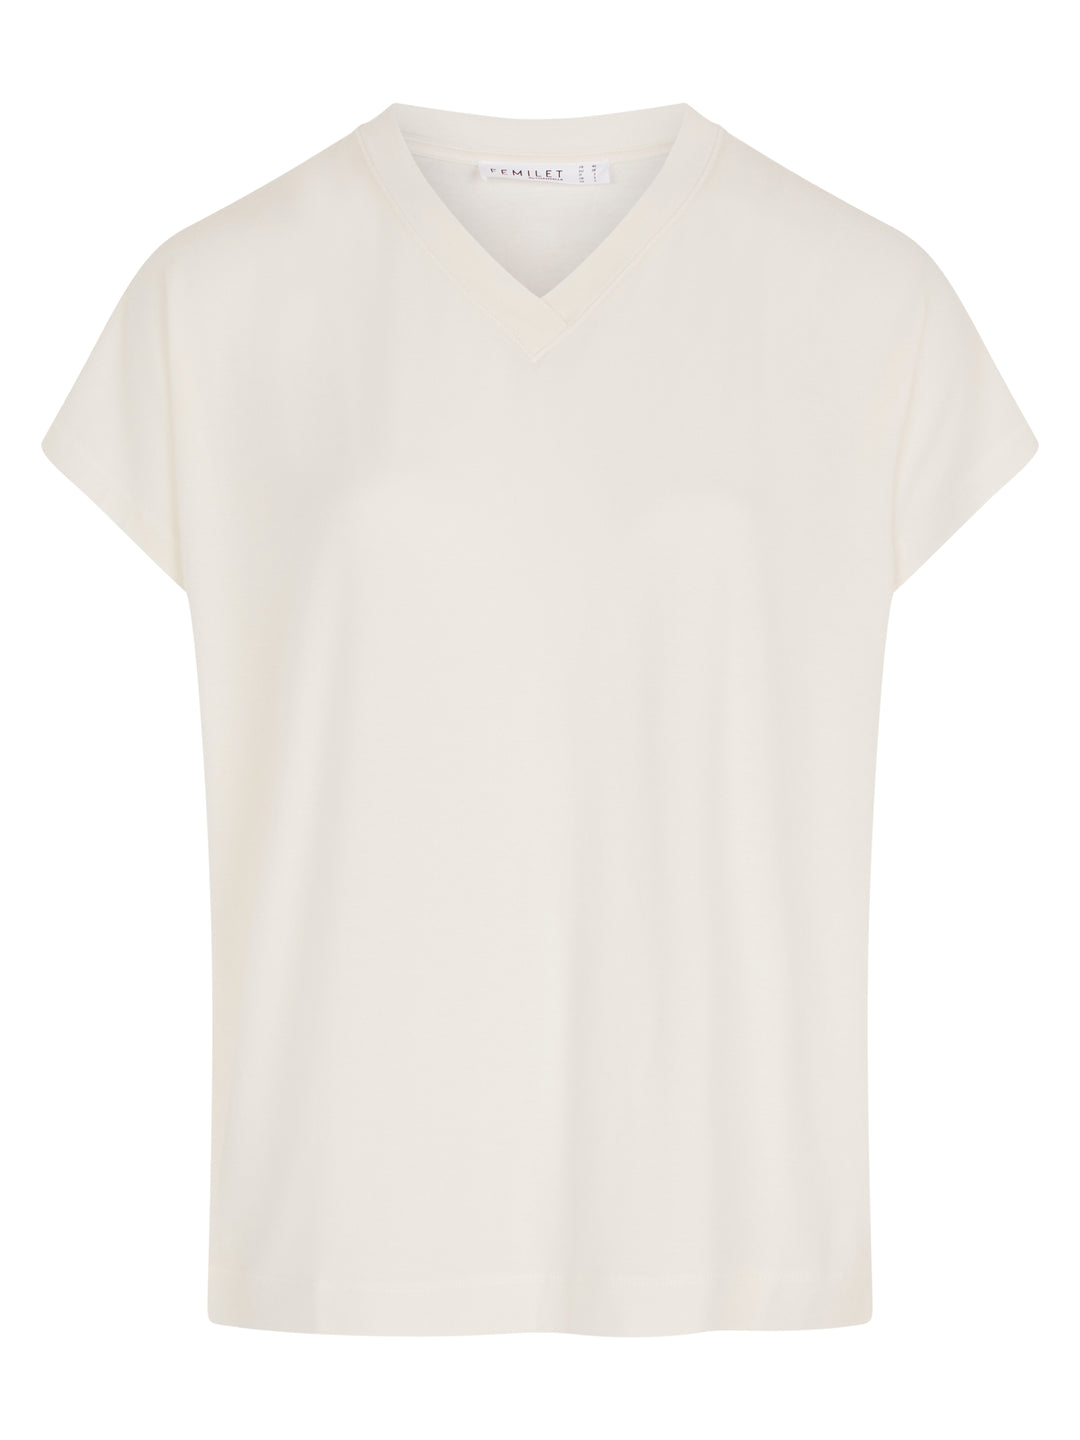 Femilet - Kate T-Shirt Short Sleeves Ivory